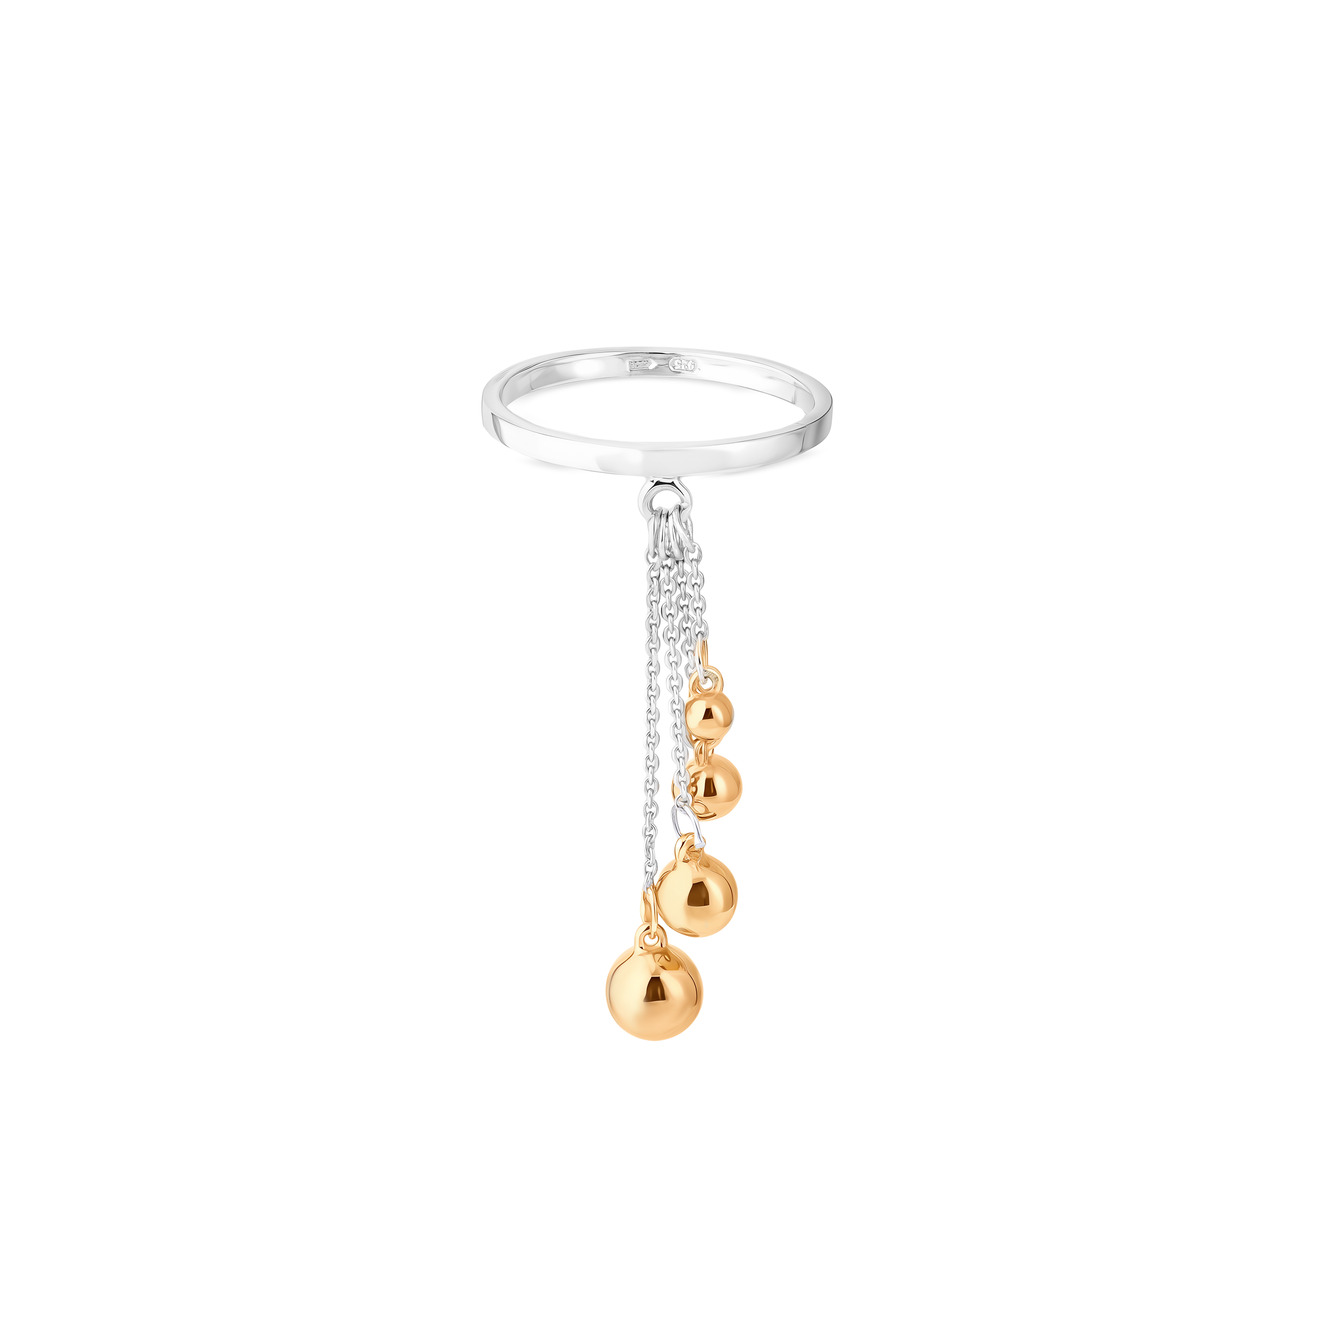 УРА jewelry Кольцо из серебра с позолоченными шариками на цепочке